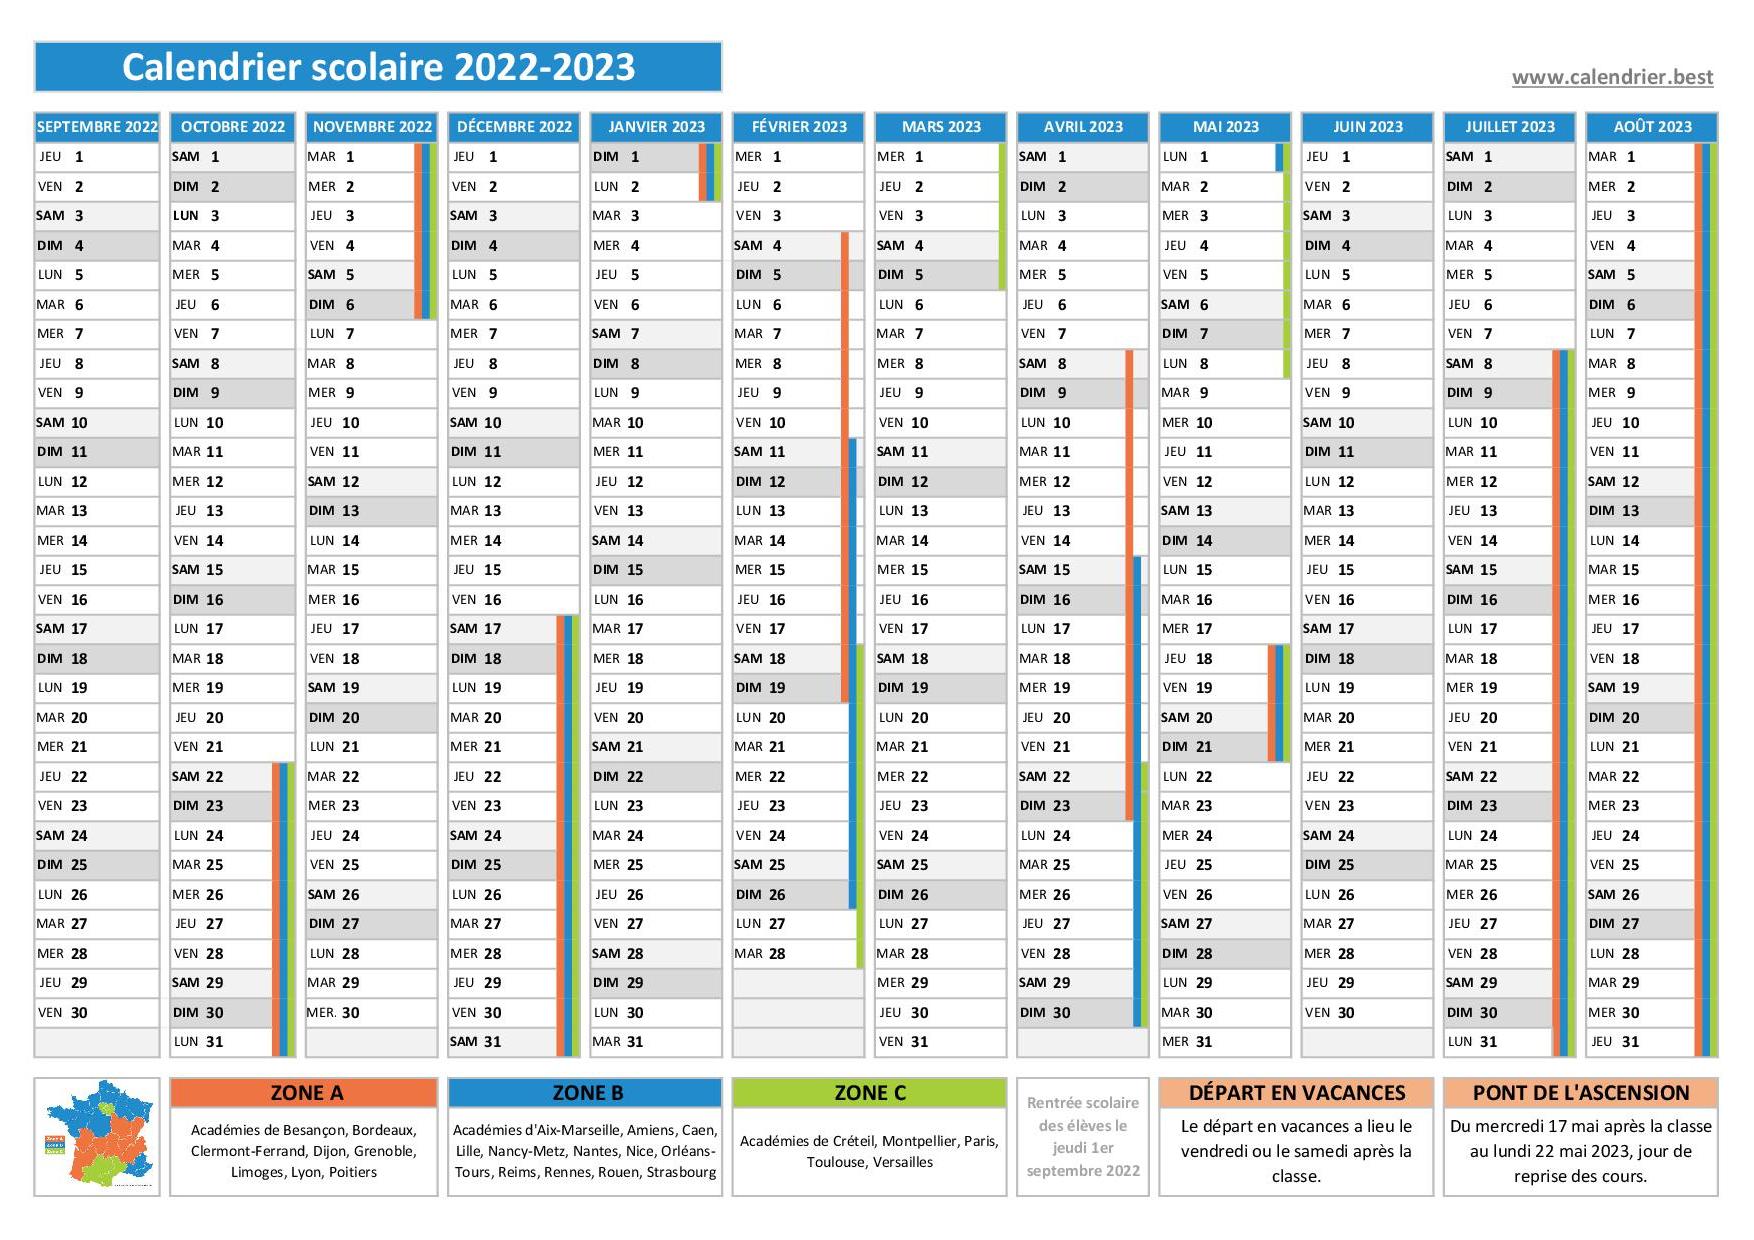 Vacances scolaires 2022-2023 ZONE A - Calendrier scolaire 2022-2023 de la  zone A à imprimer